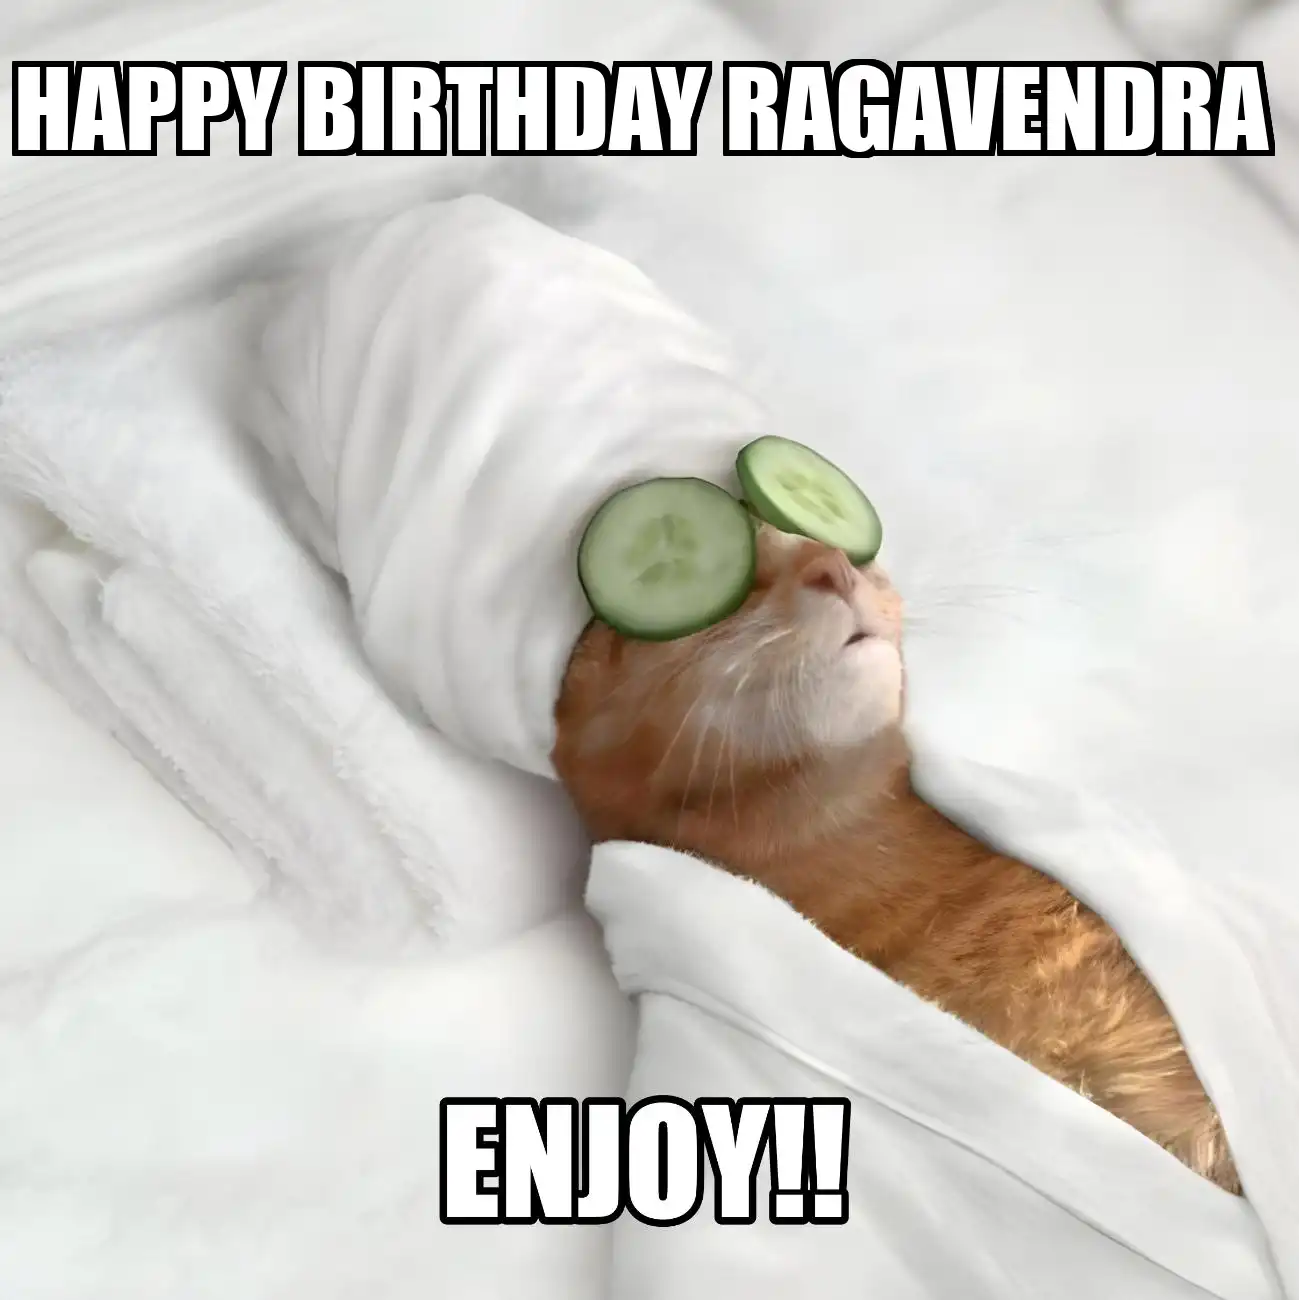 Happy Birthday Ragavendra Enjoy Cat Meme